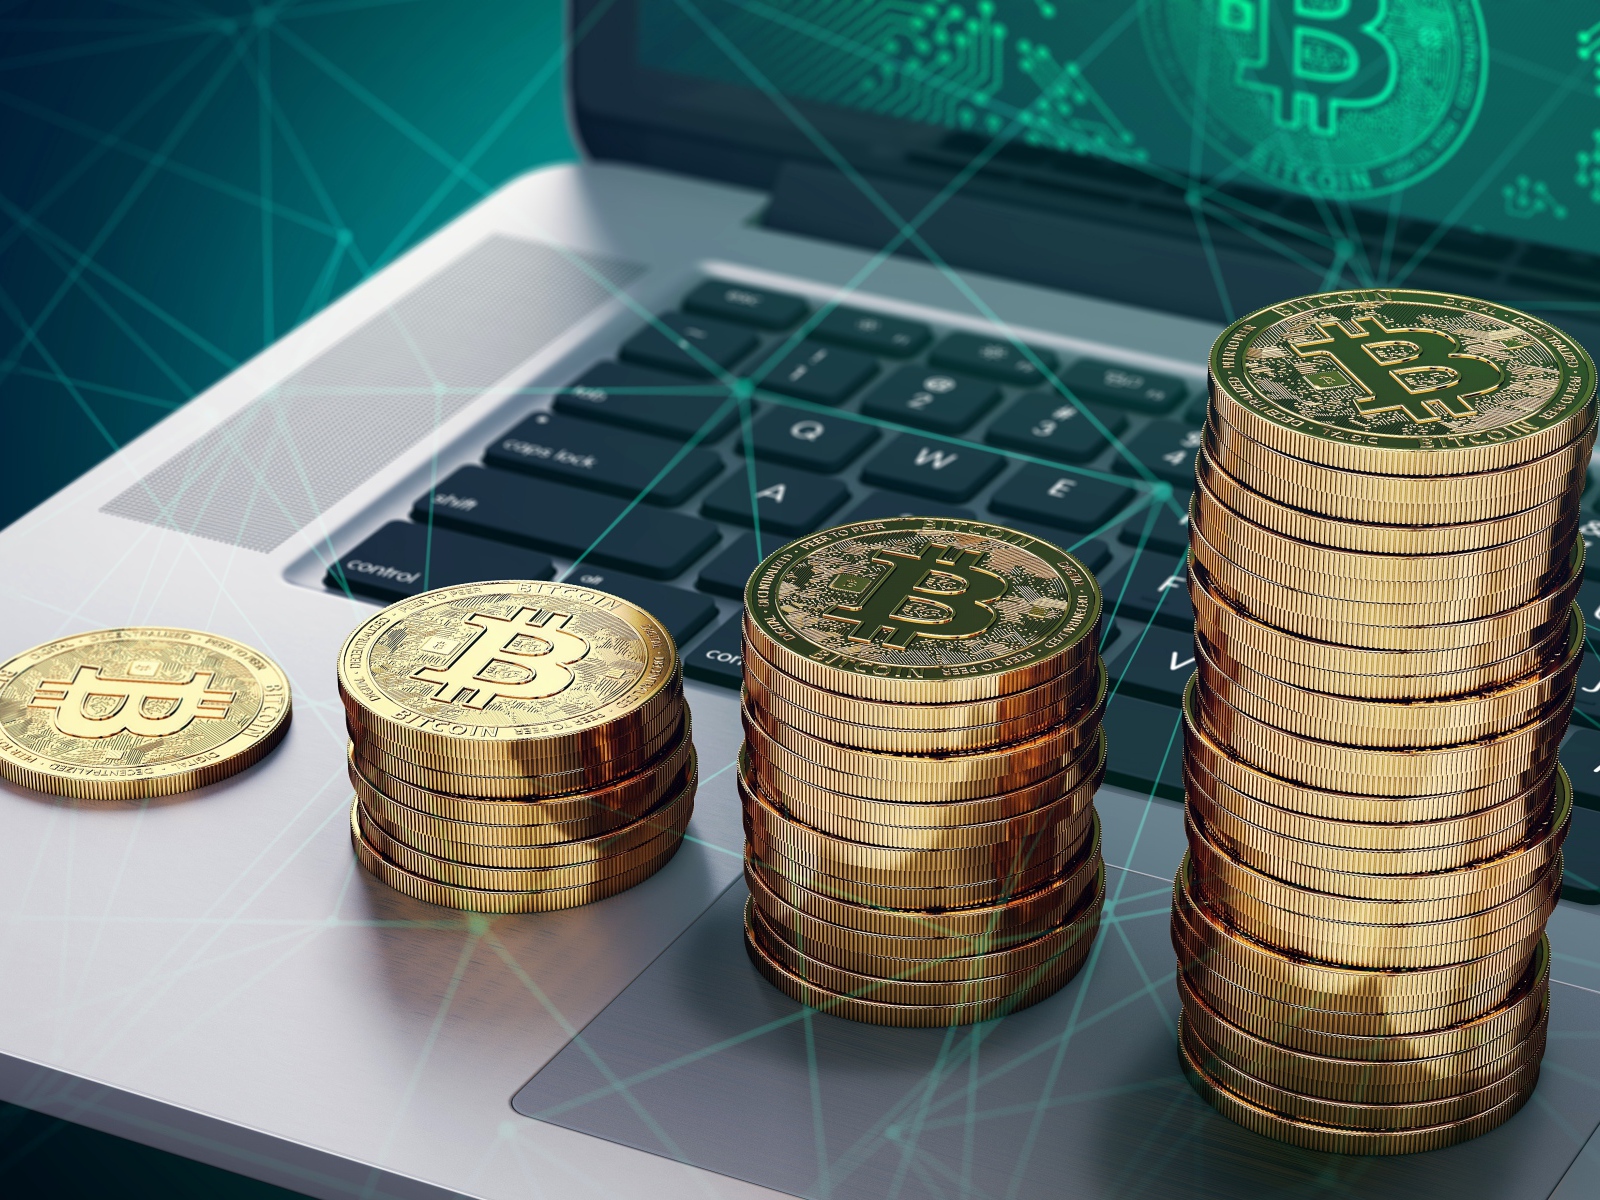 Bitcoin gold coins lie on a laptop